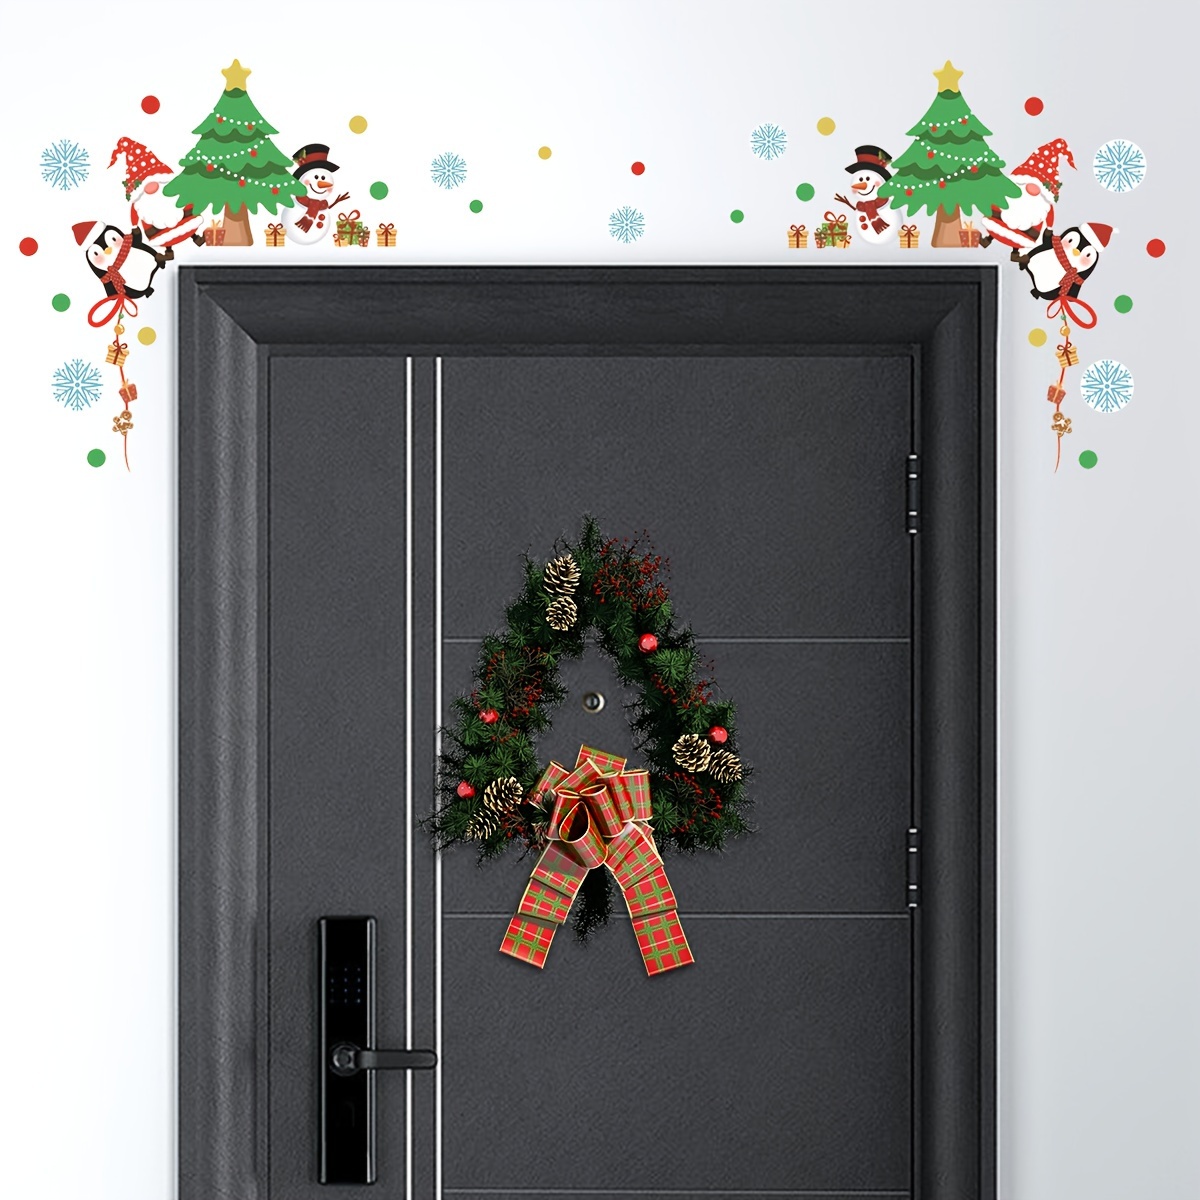 Christmas Garage Door Decoration Stickers Outdoor Xmas PVC Door Decals Non-Magnetic Christmas Decor Garage Door Decor for Fridge Window Wall Door